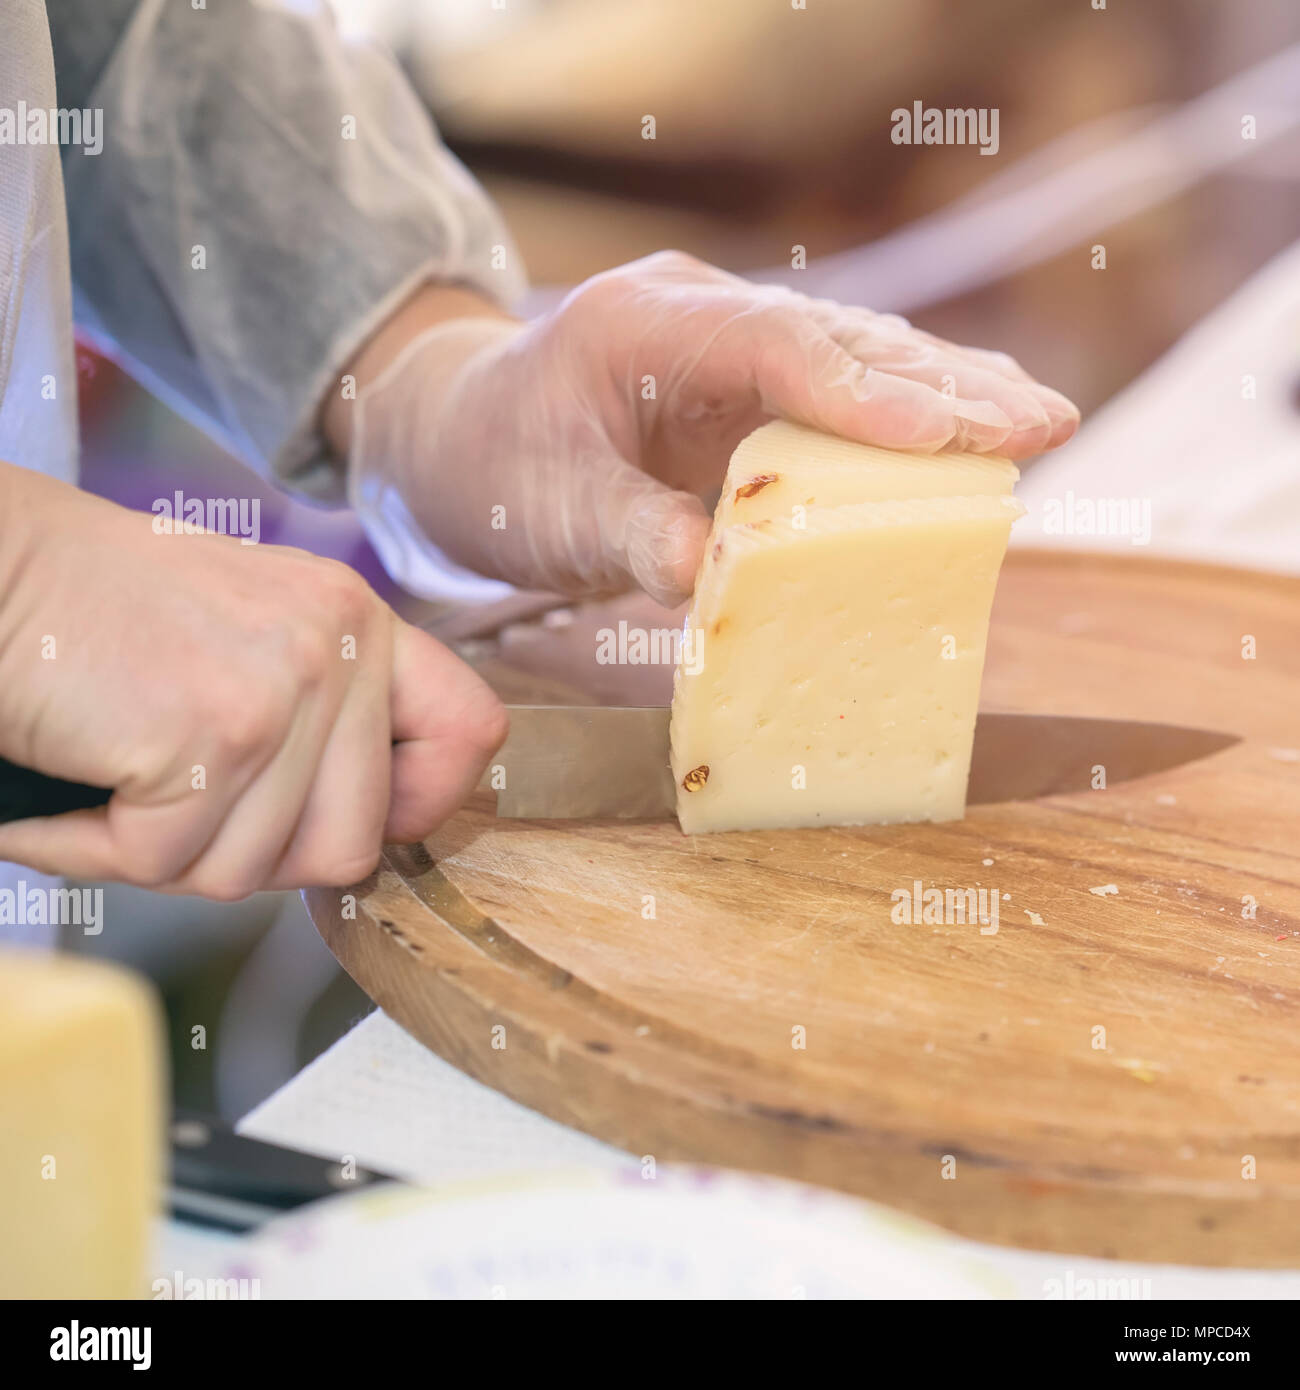 Verkäufer Schnitte und verkauft Käse, Käse, Köpfe auf Holz zu schneiden. Hände mit Messer schließen. Selektive konzentrieren. Gastronomische Milchprodukte, realen Szene, essen Markt Stockfoto